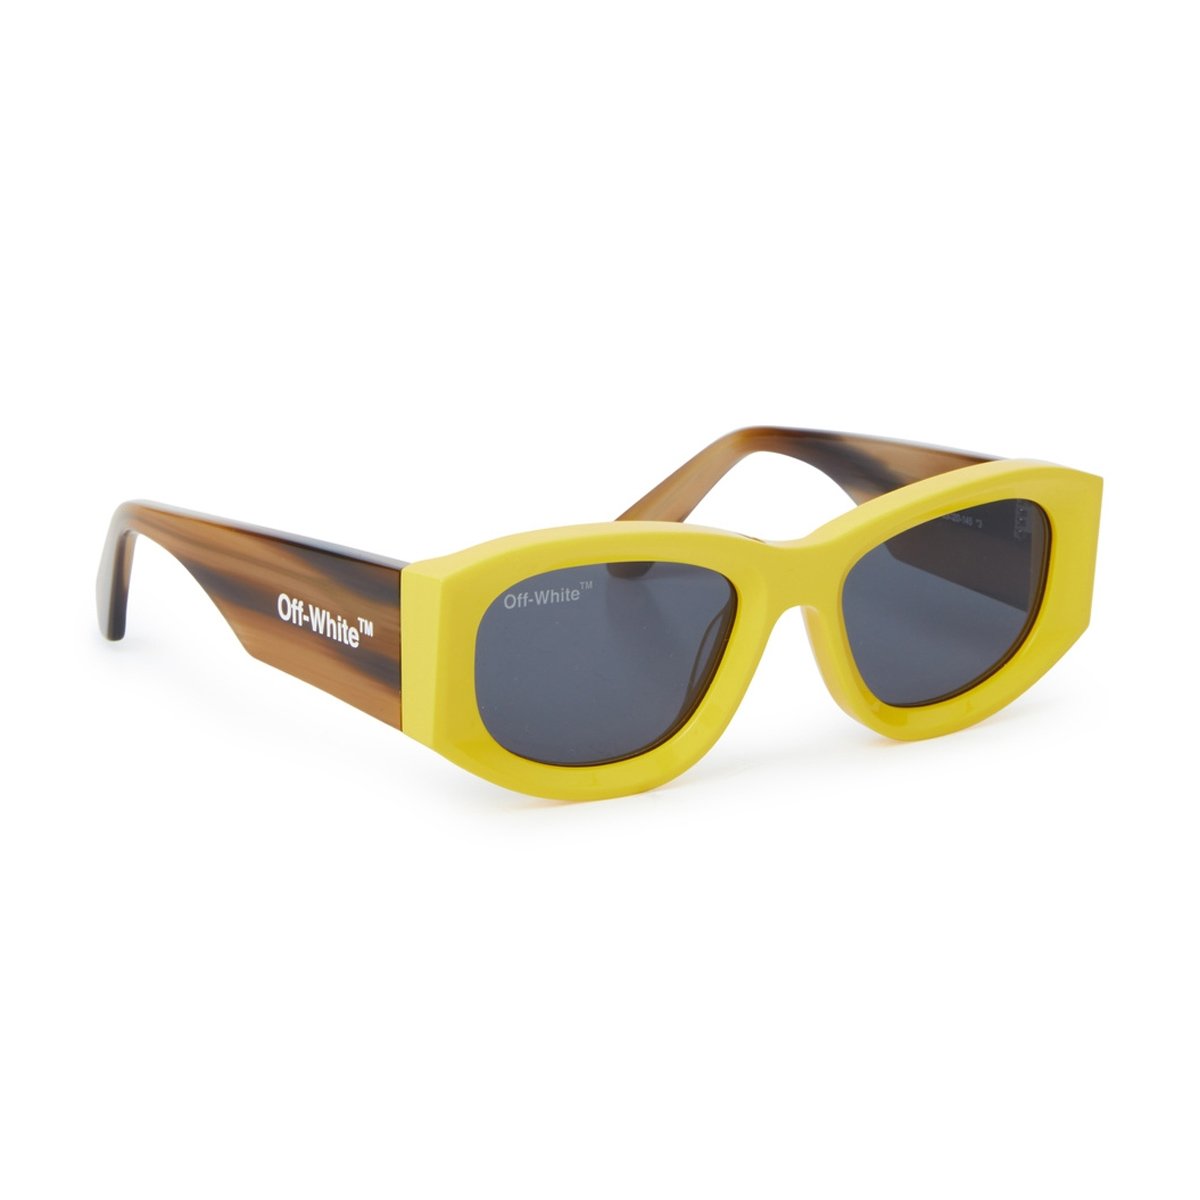 Off-White Irregular Frame Sunglasses